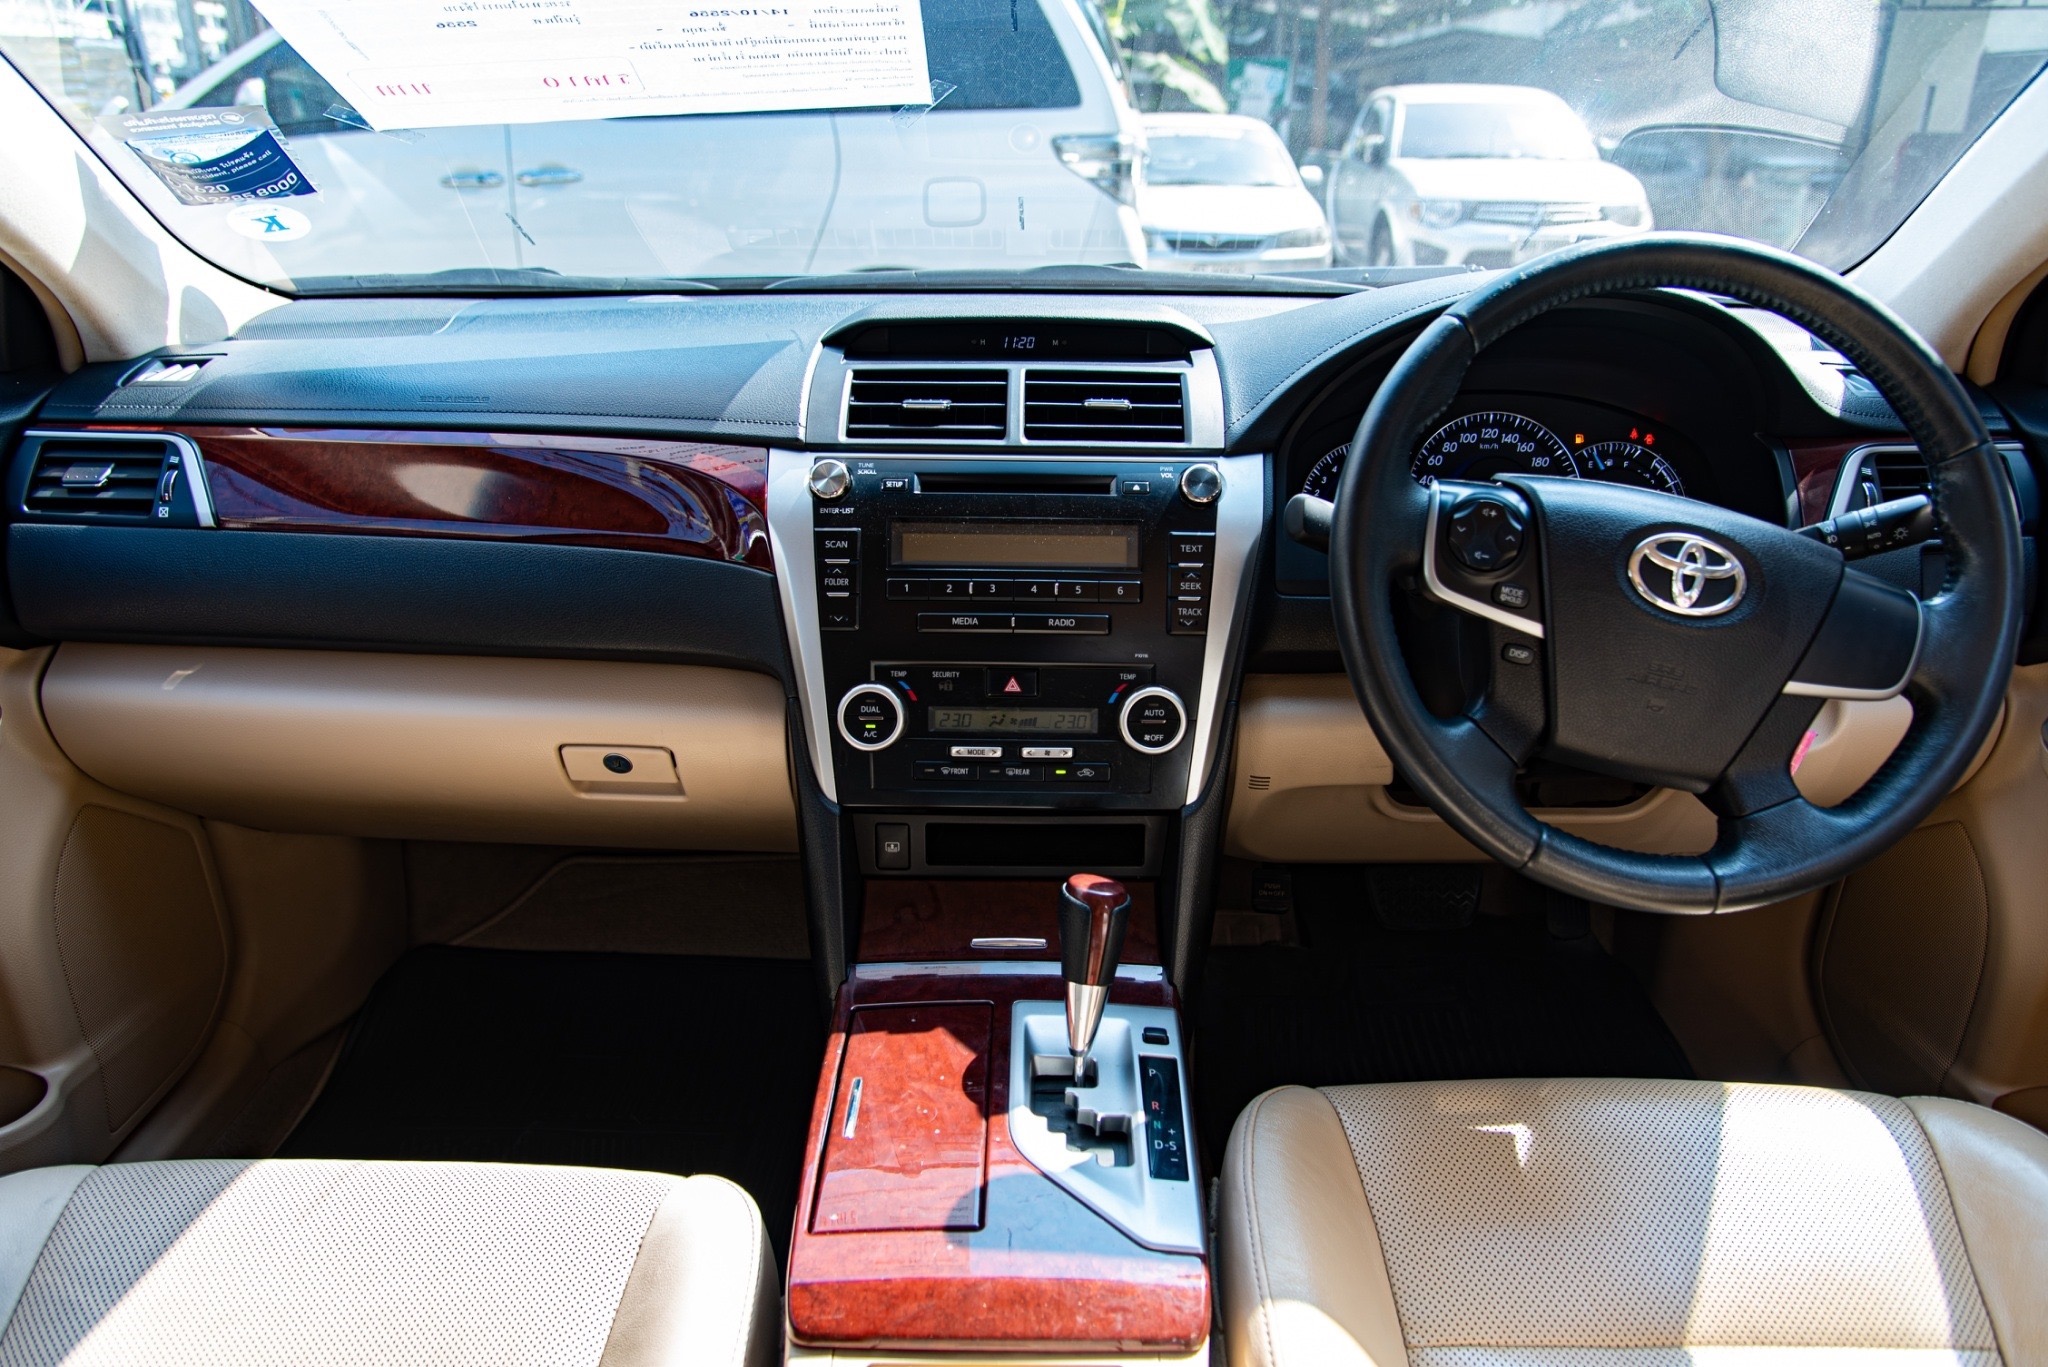 Toyota Camry ปี 2013 สีเทา